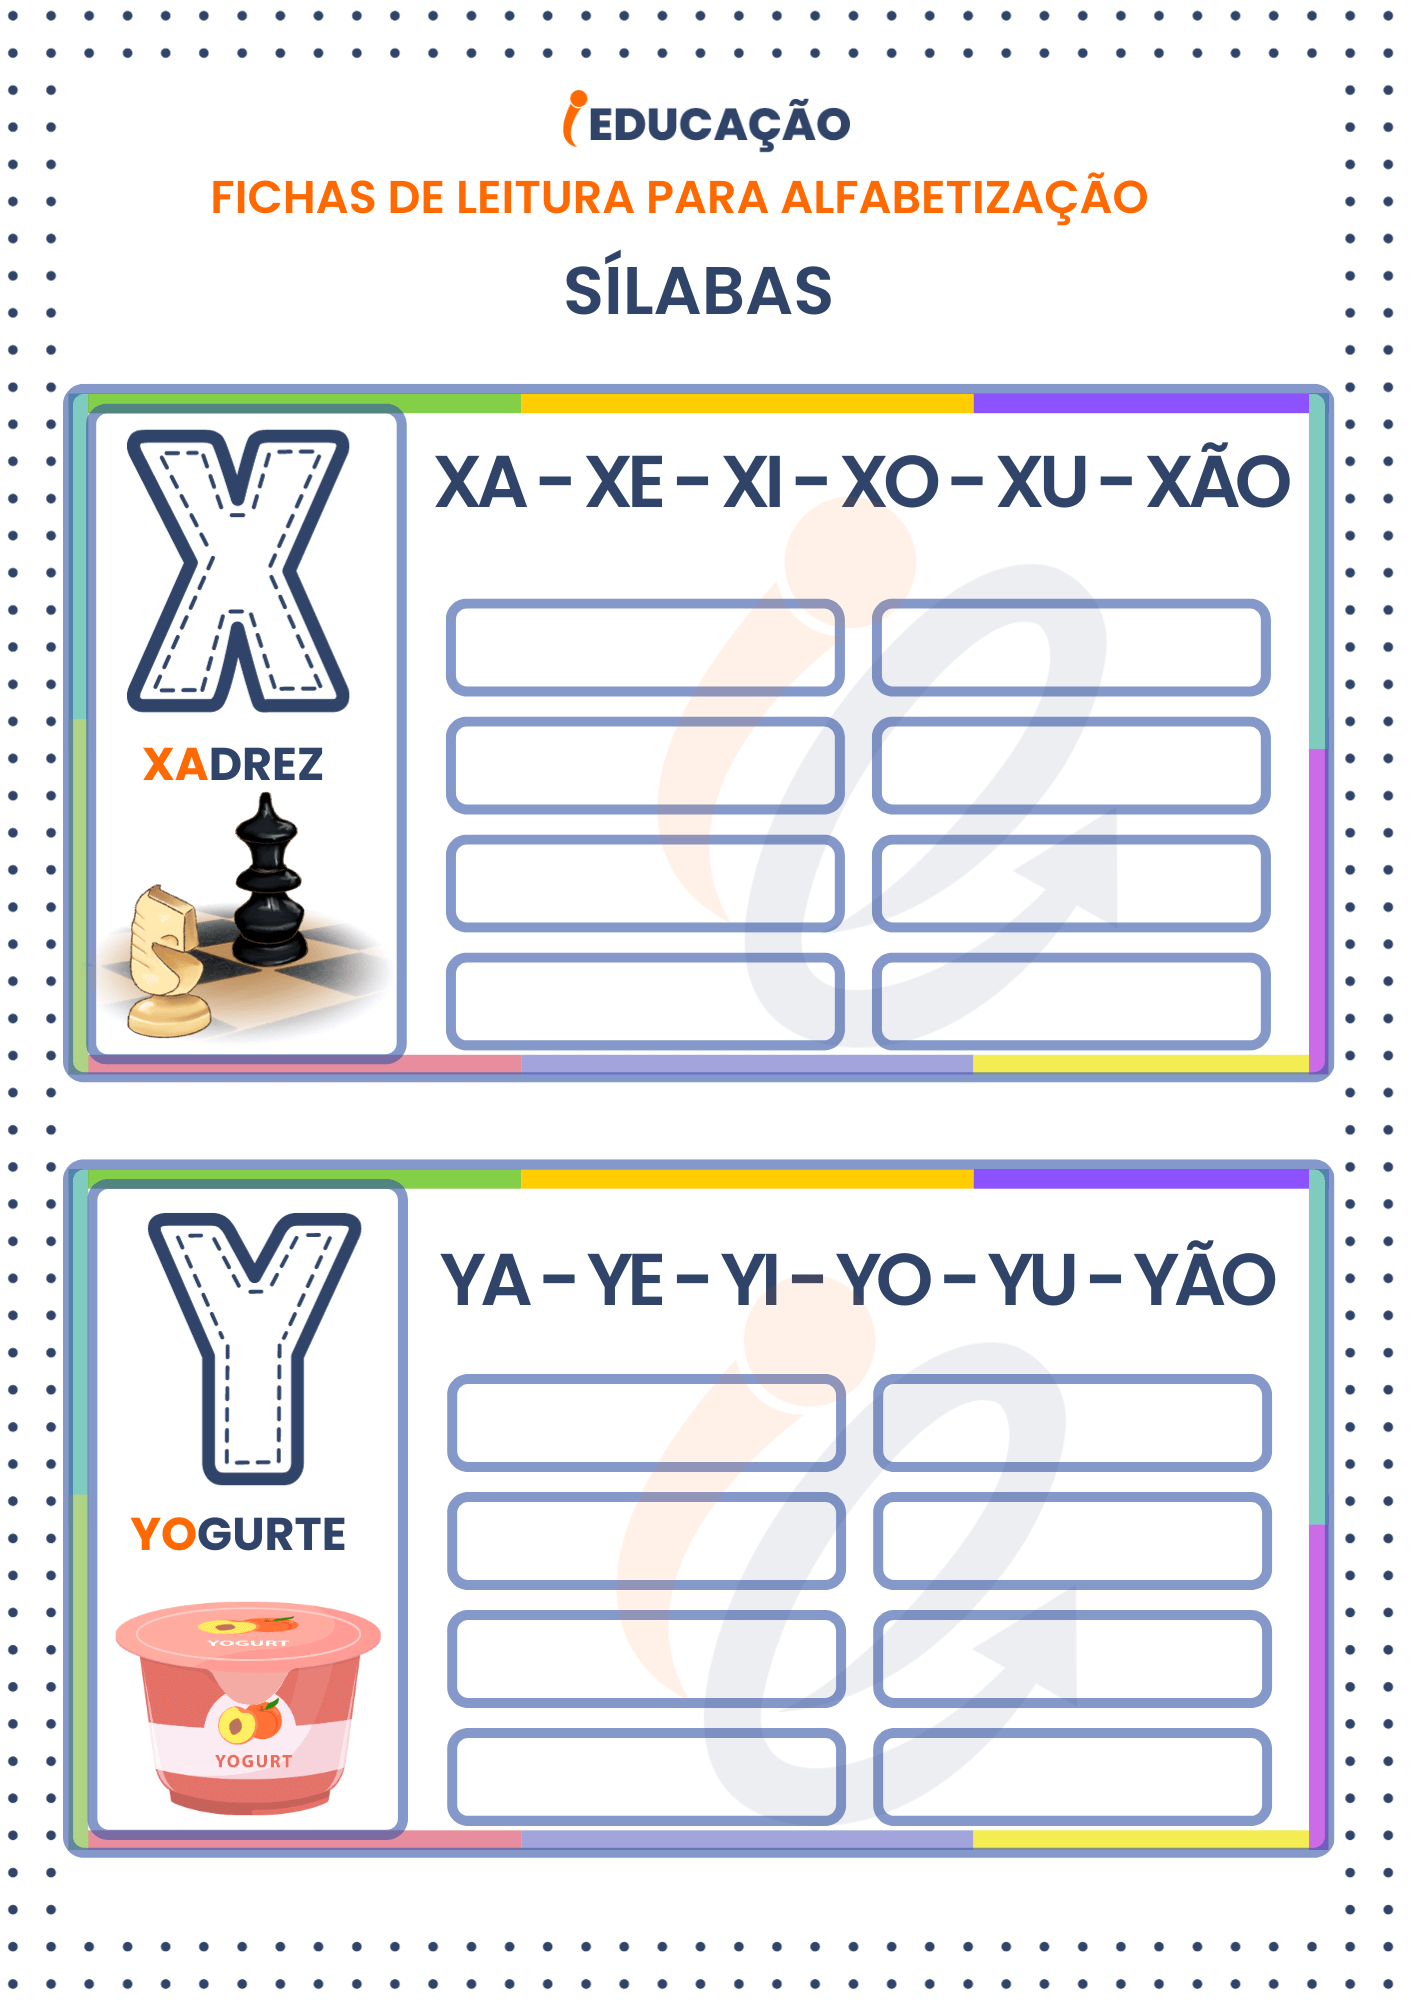 Fichas de Leitura Sílabas para Alfabetização: Sílabas das letras X e Y